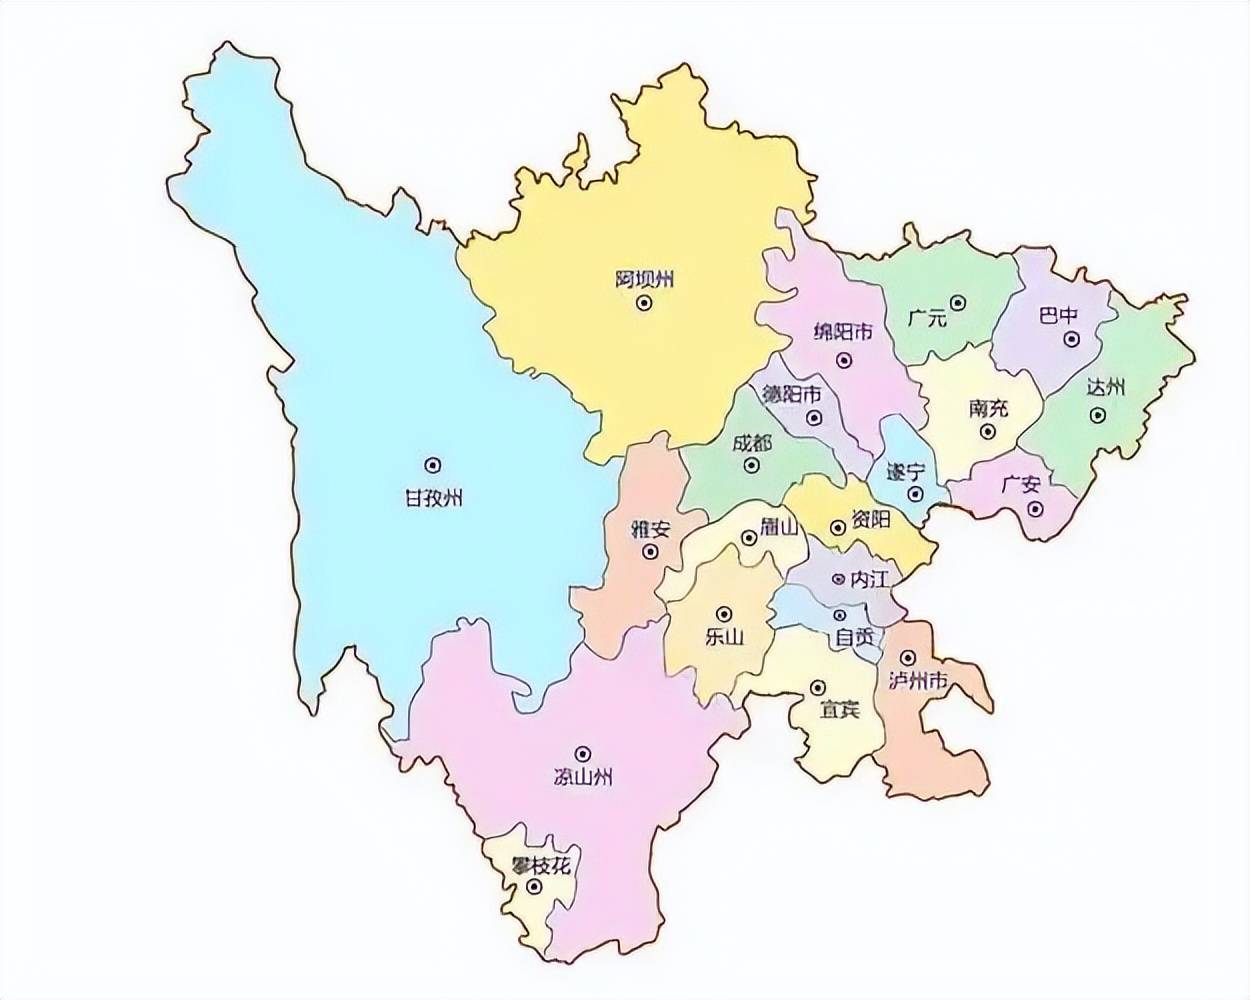 中国地图四川省与甘肃省,陕西省,重庆市,贵州省,云南省,西藏自治区和